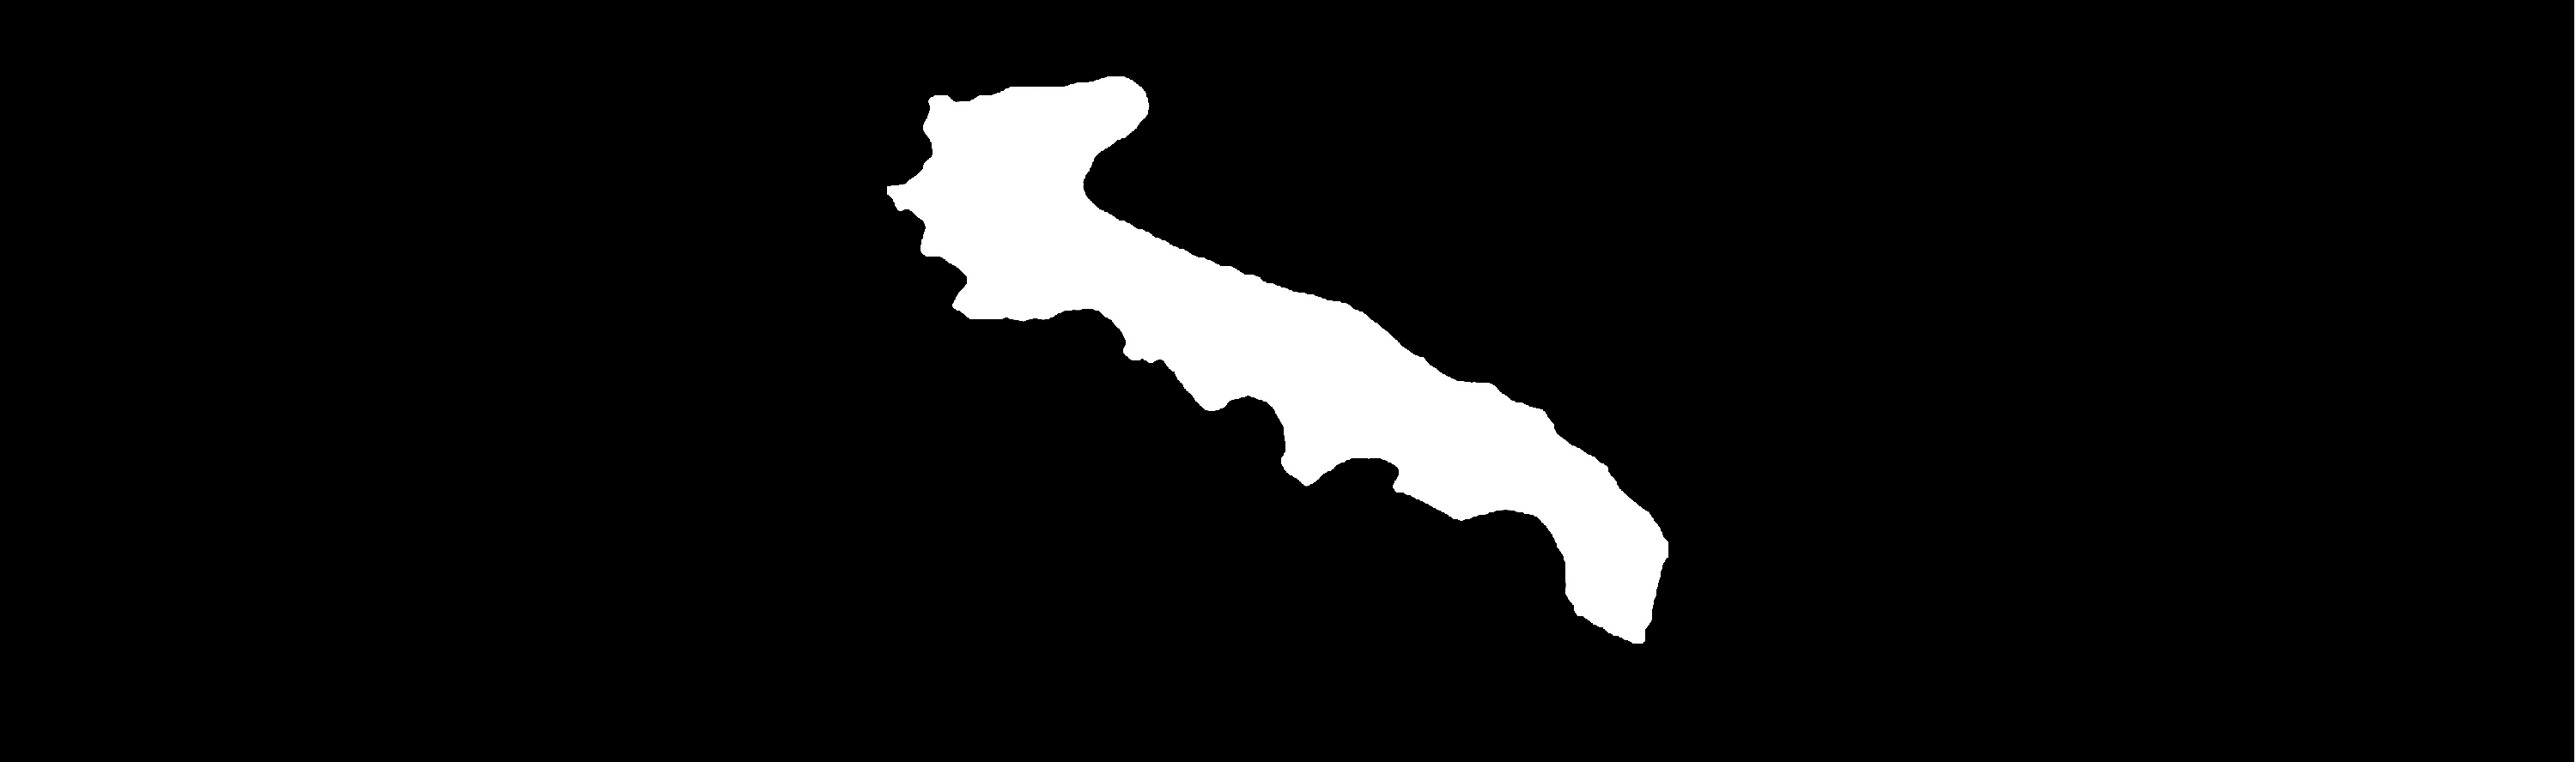 Puglia mafia